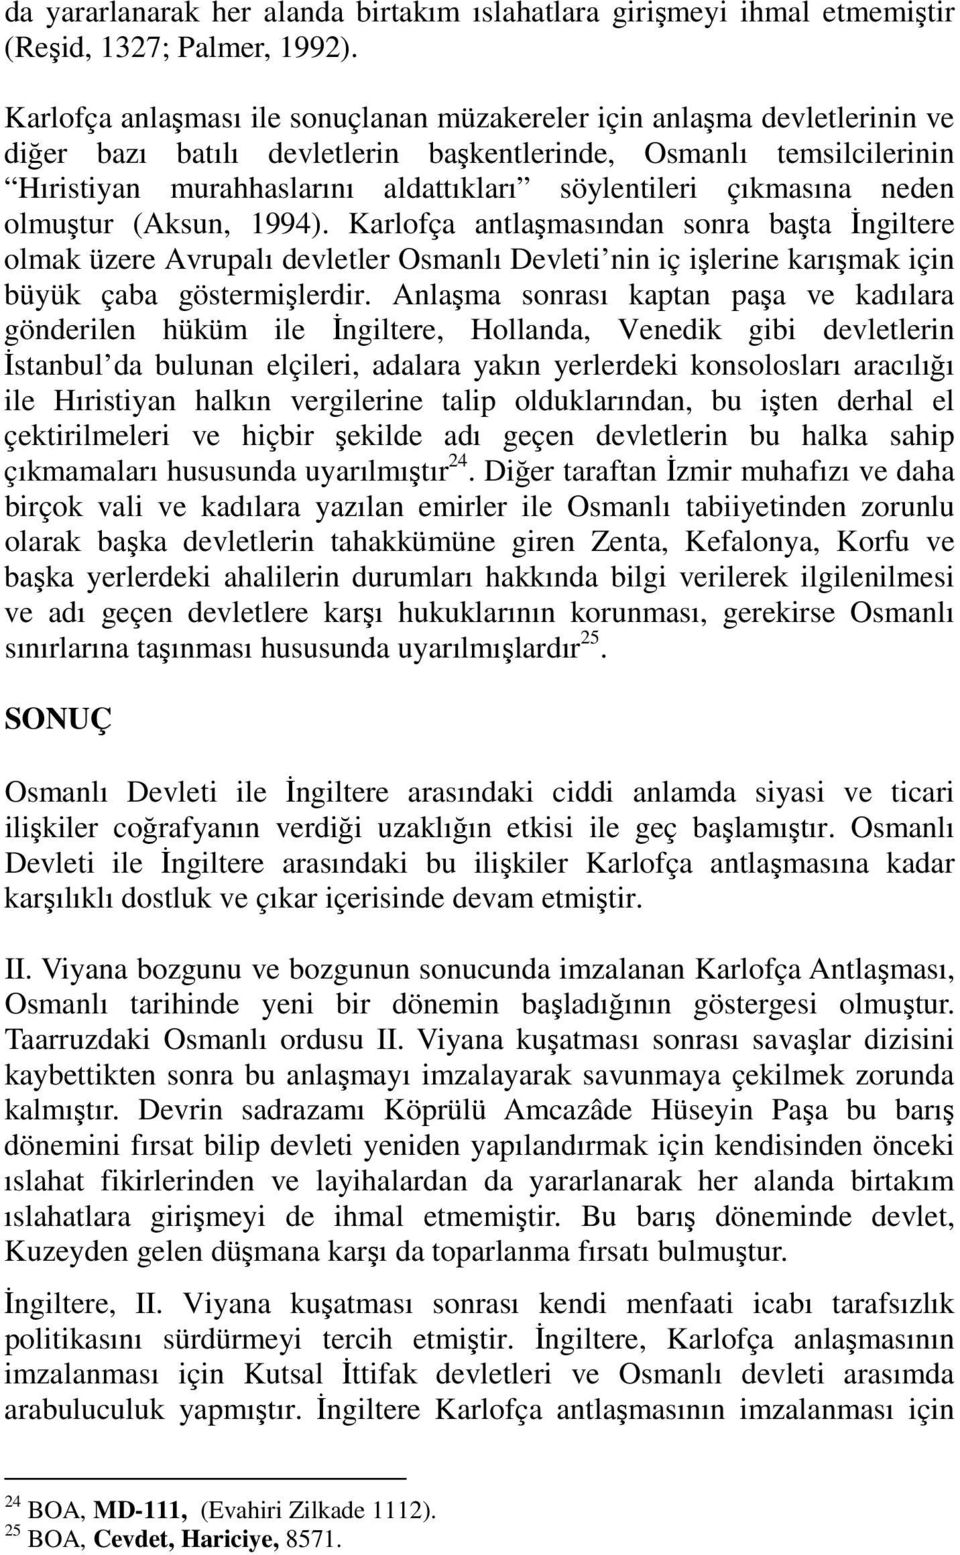 çıkmasına neden olmuştur (Aksun, 1994). Karlofça antlaşmasından sonra başta Đngiltere olmak üzere Avrupalı devletler Osmanlı Devleti nin iç işlerine karışmak için büyük çaba göstermişlerdir.